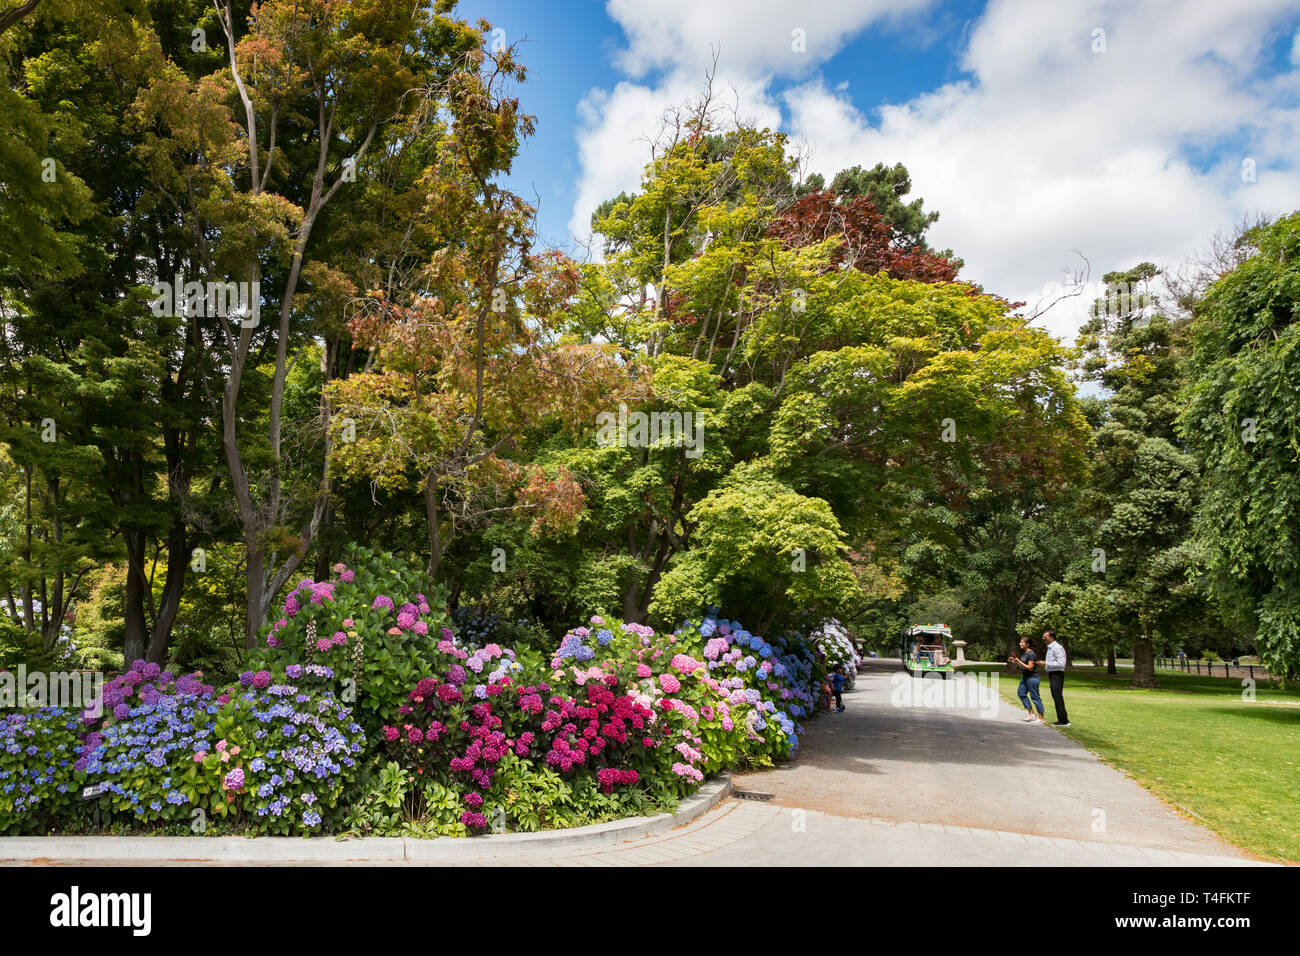 Vom 8. Januar 2019: Christchurch, Neuseeland - Touristen Fotos nehmen an der farbenfrohe Hortensien im Botanischen Gärten, an einem schönen Sommertag. Stockfoto